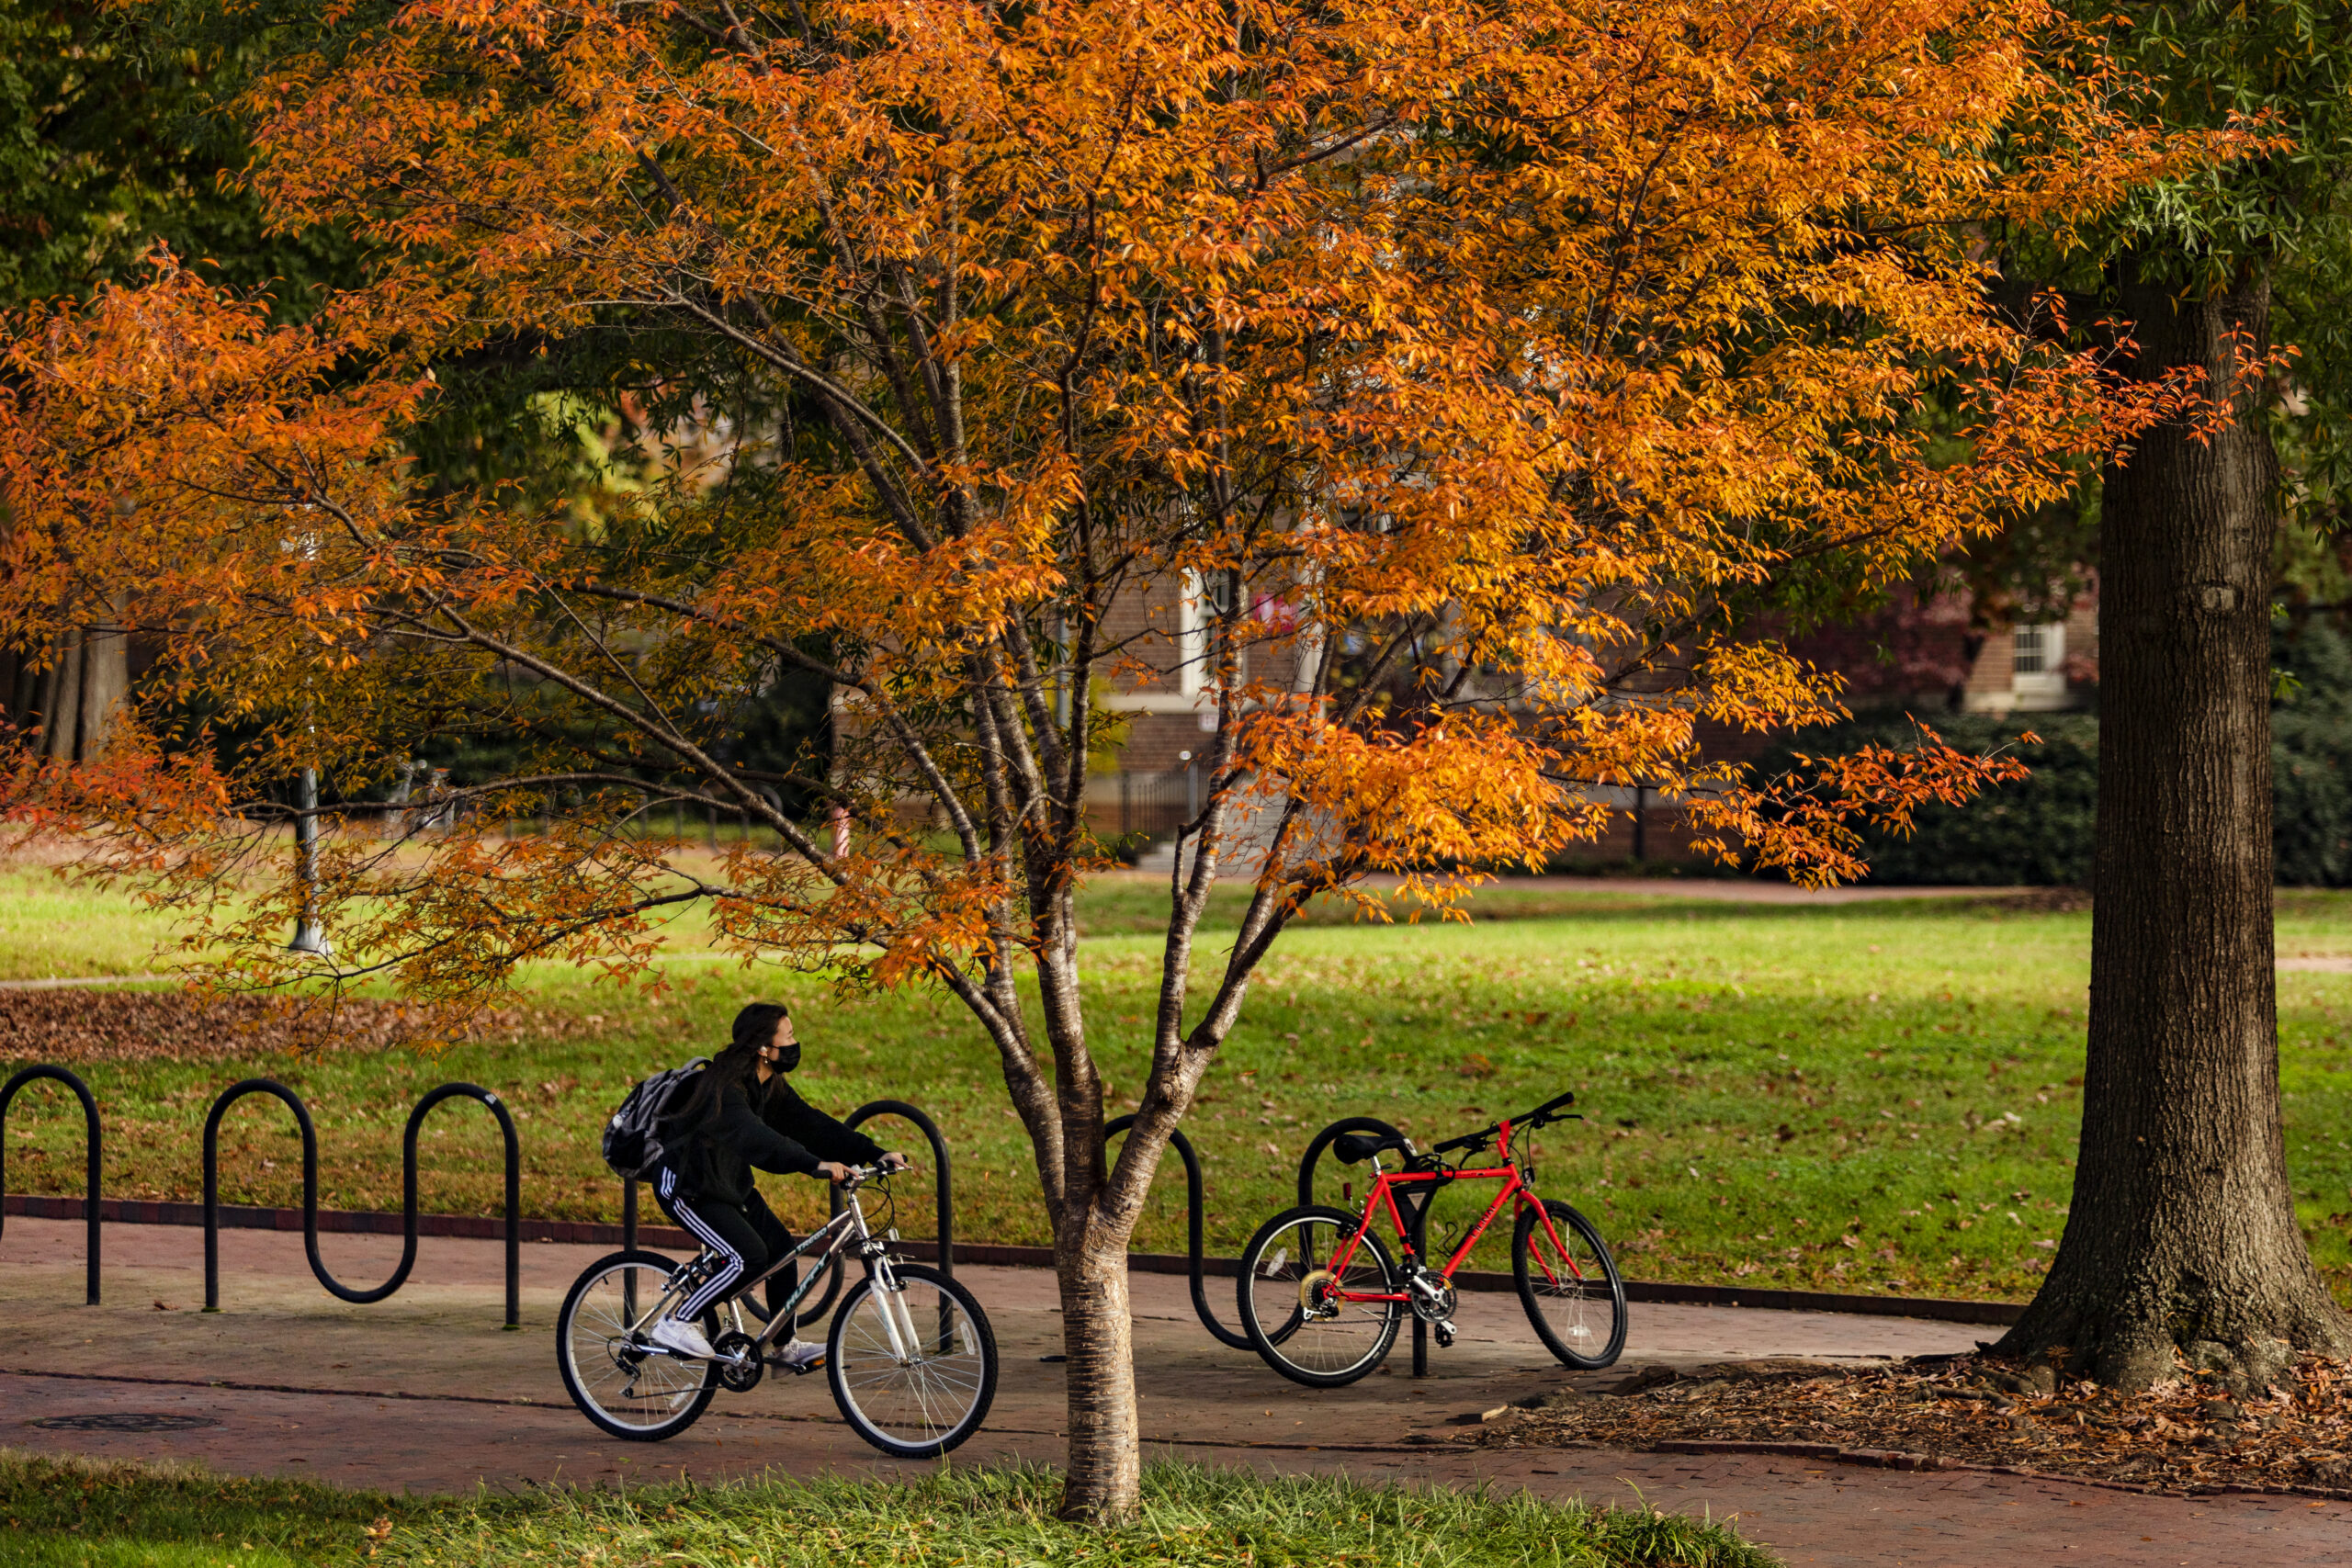 Autumn campus scene